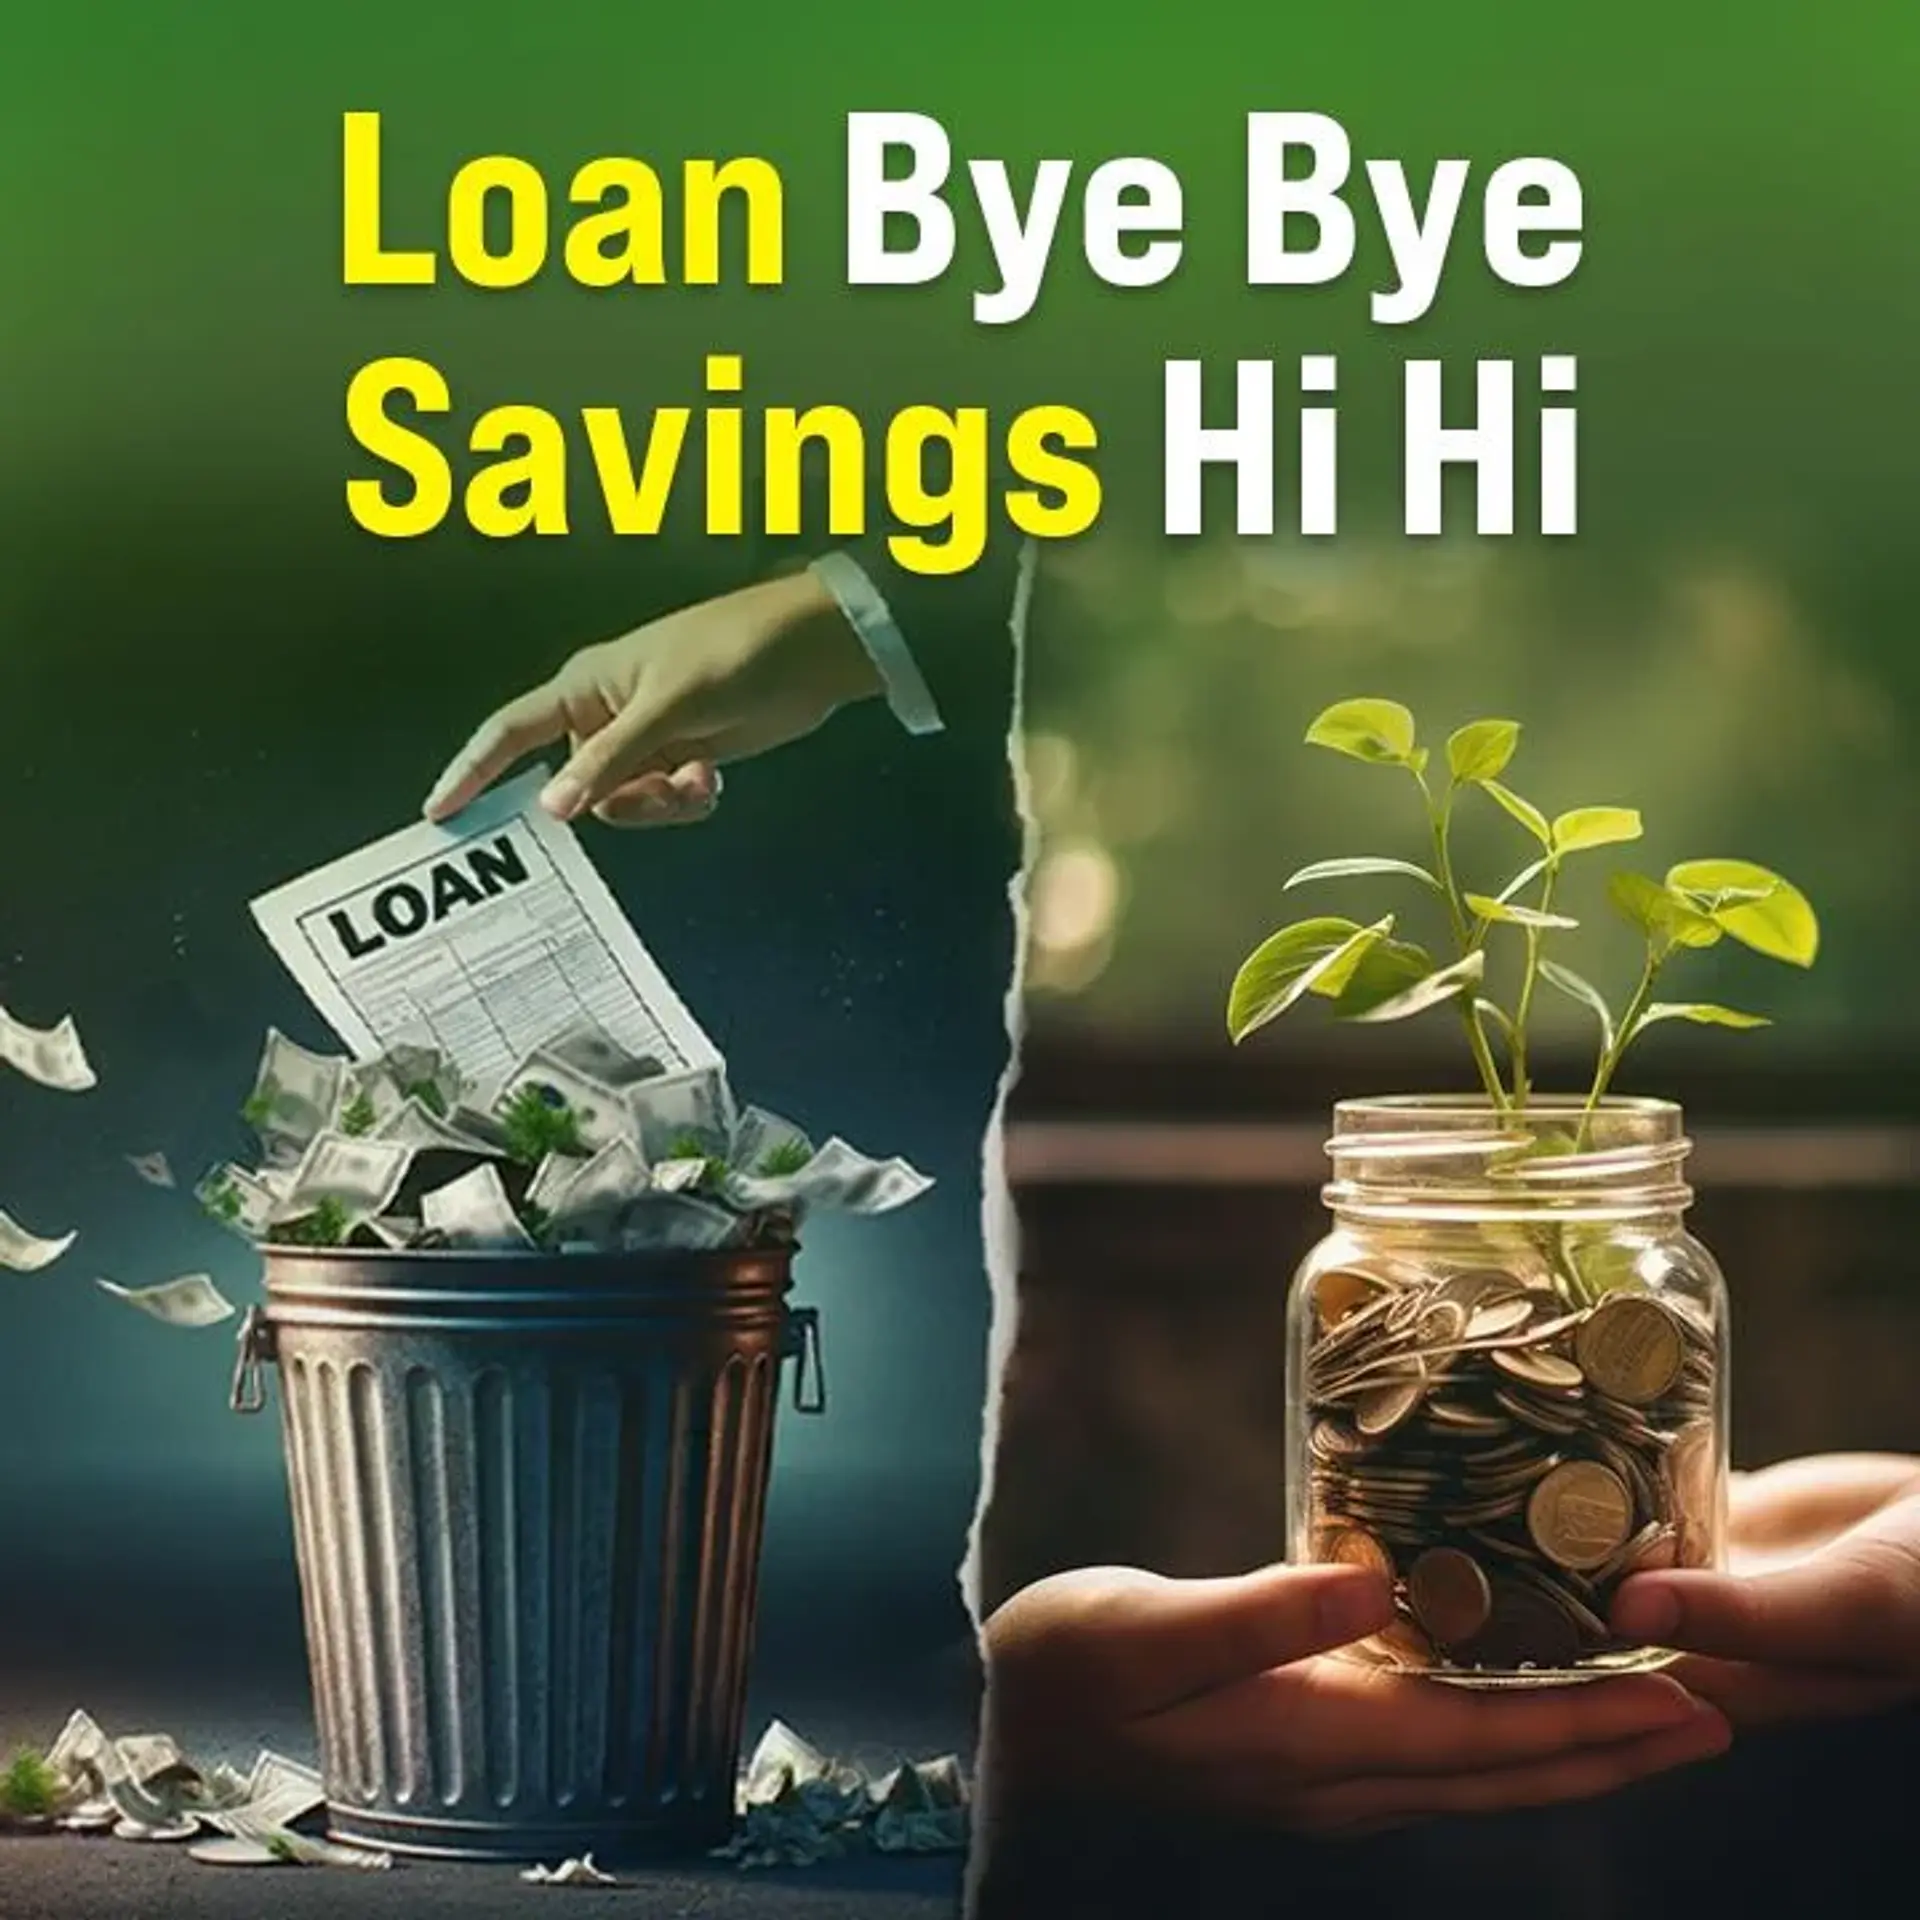 Loans Bye Bye, Savings Hi Hi | 